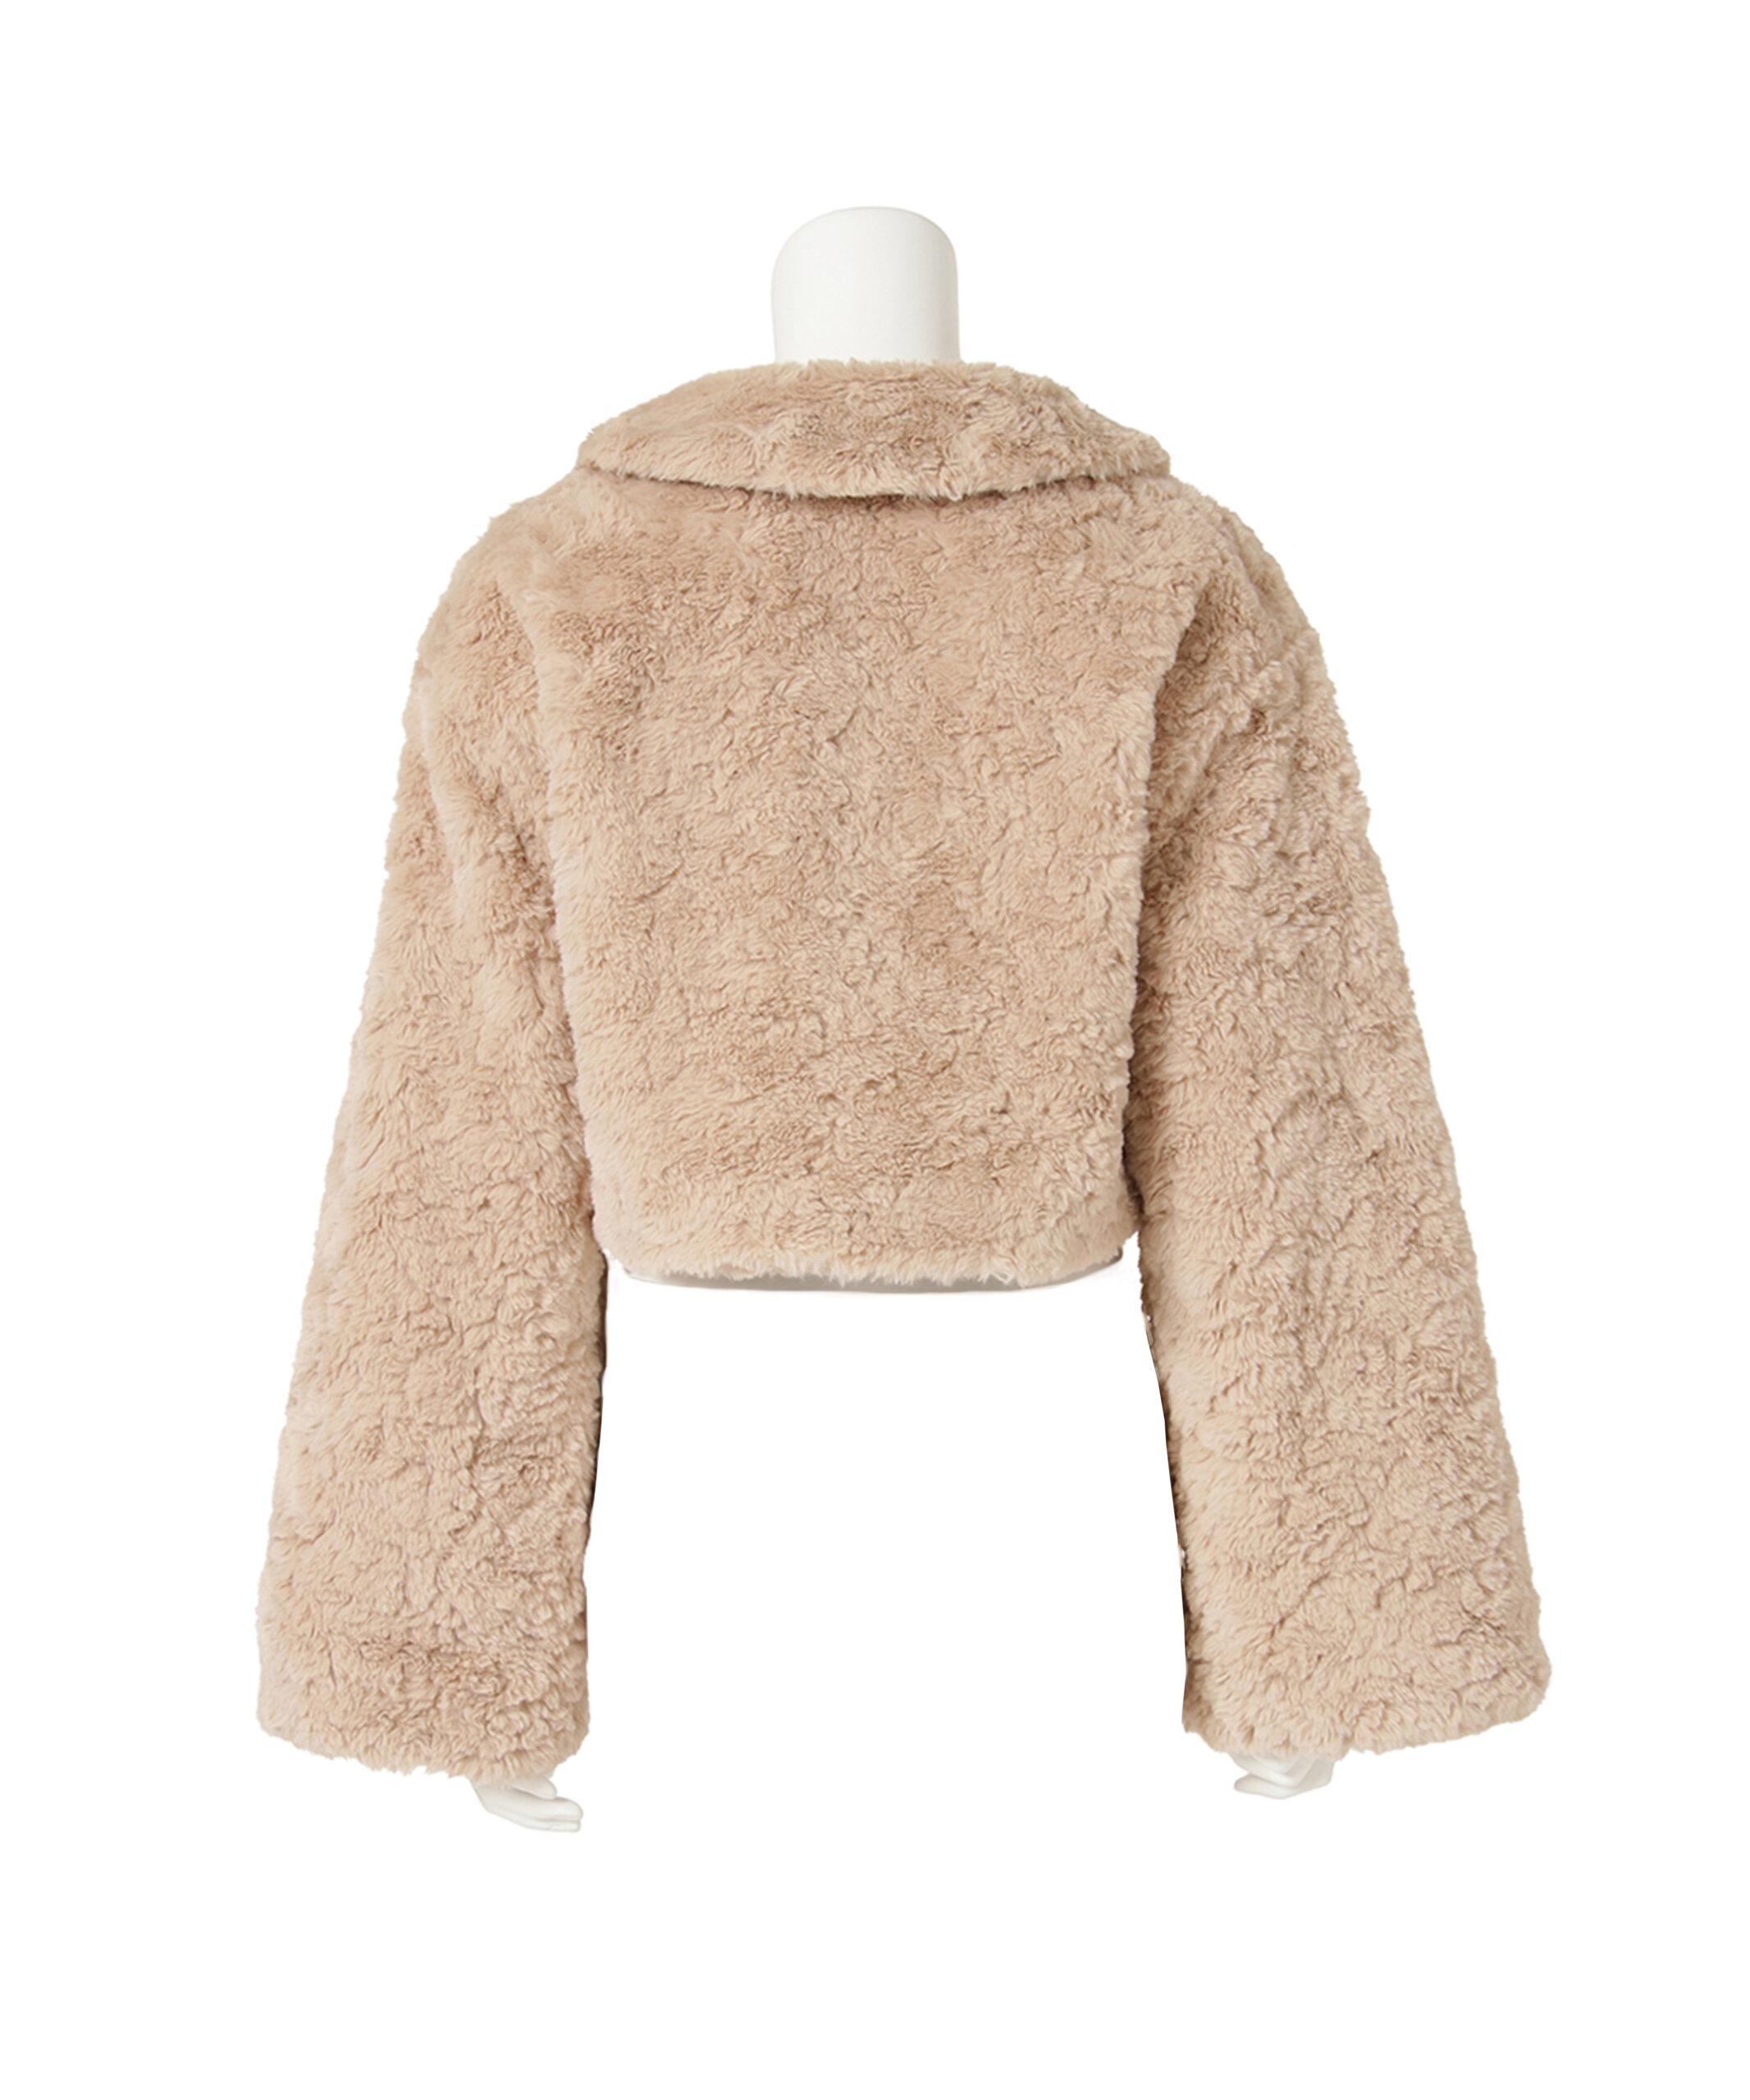 poodle fur fluffy short coat